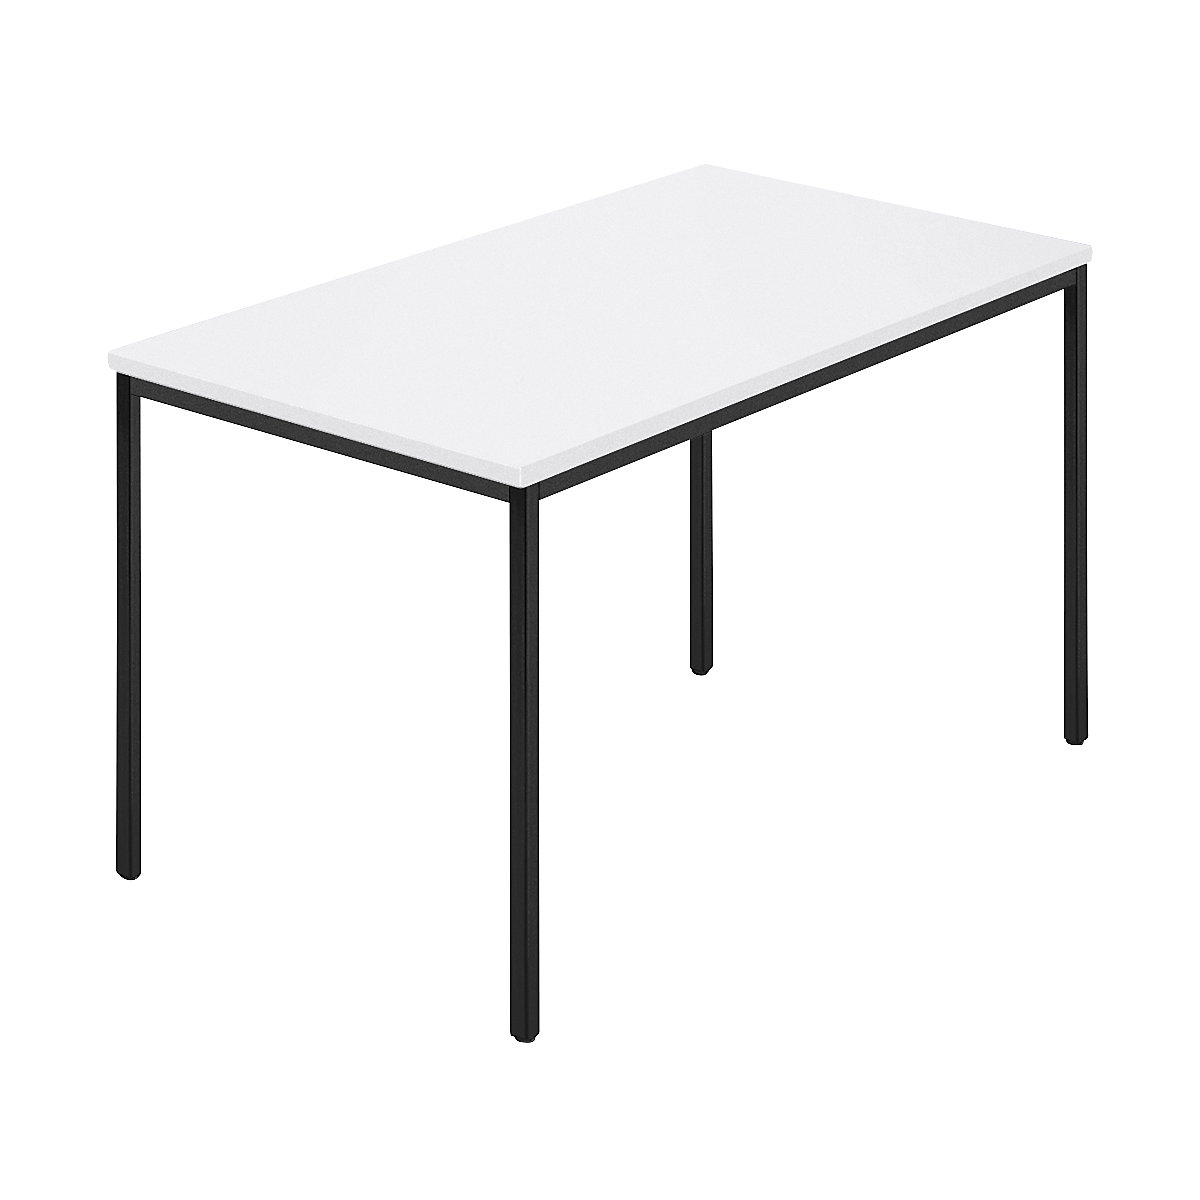 Rechthoekige tafel, vierkante buis met coating, b x d = 1200 x 800 mm, wit / antracietkleurig-5